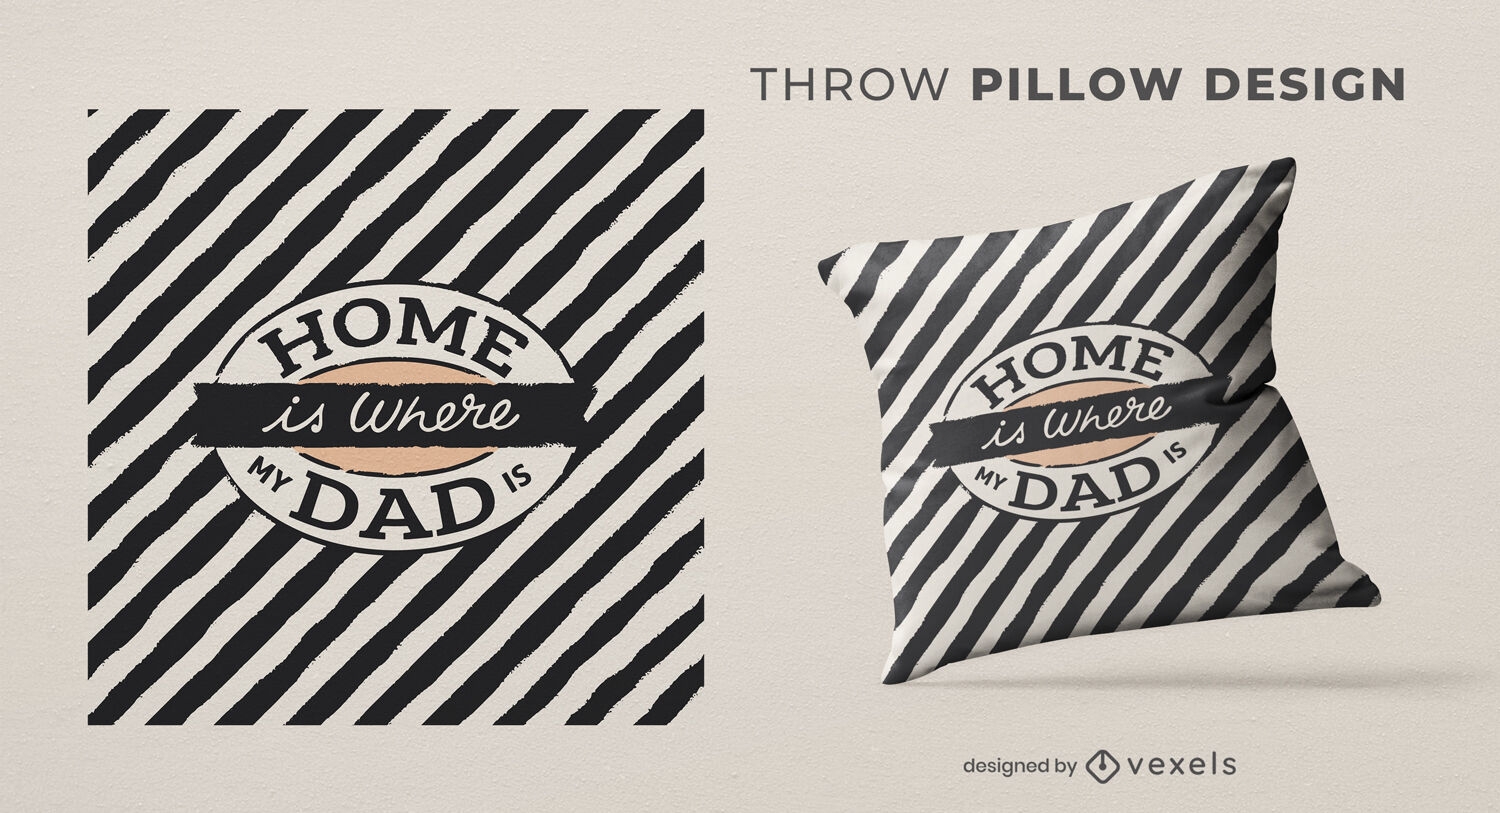 El hogar es el diseño de la almohada de tiro a rayas de papá.